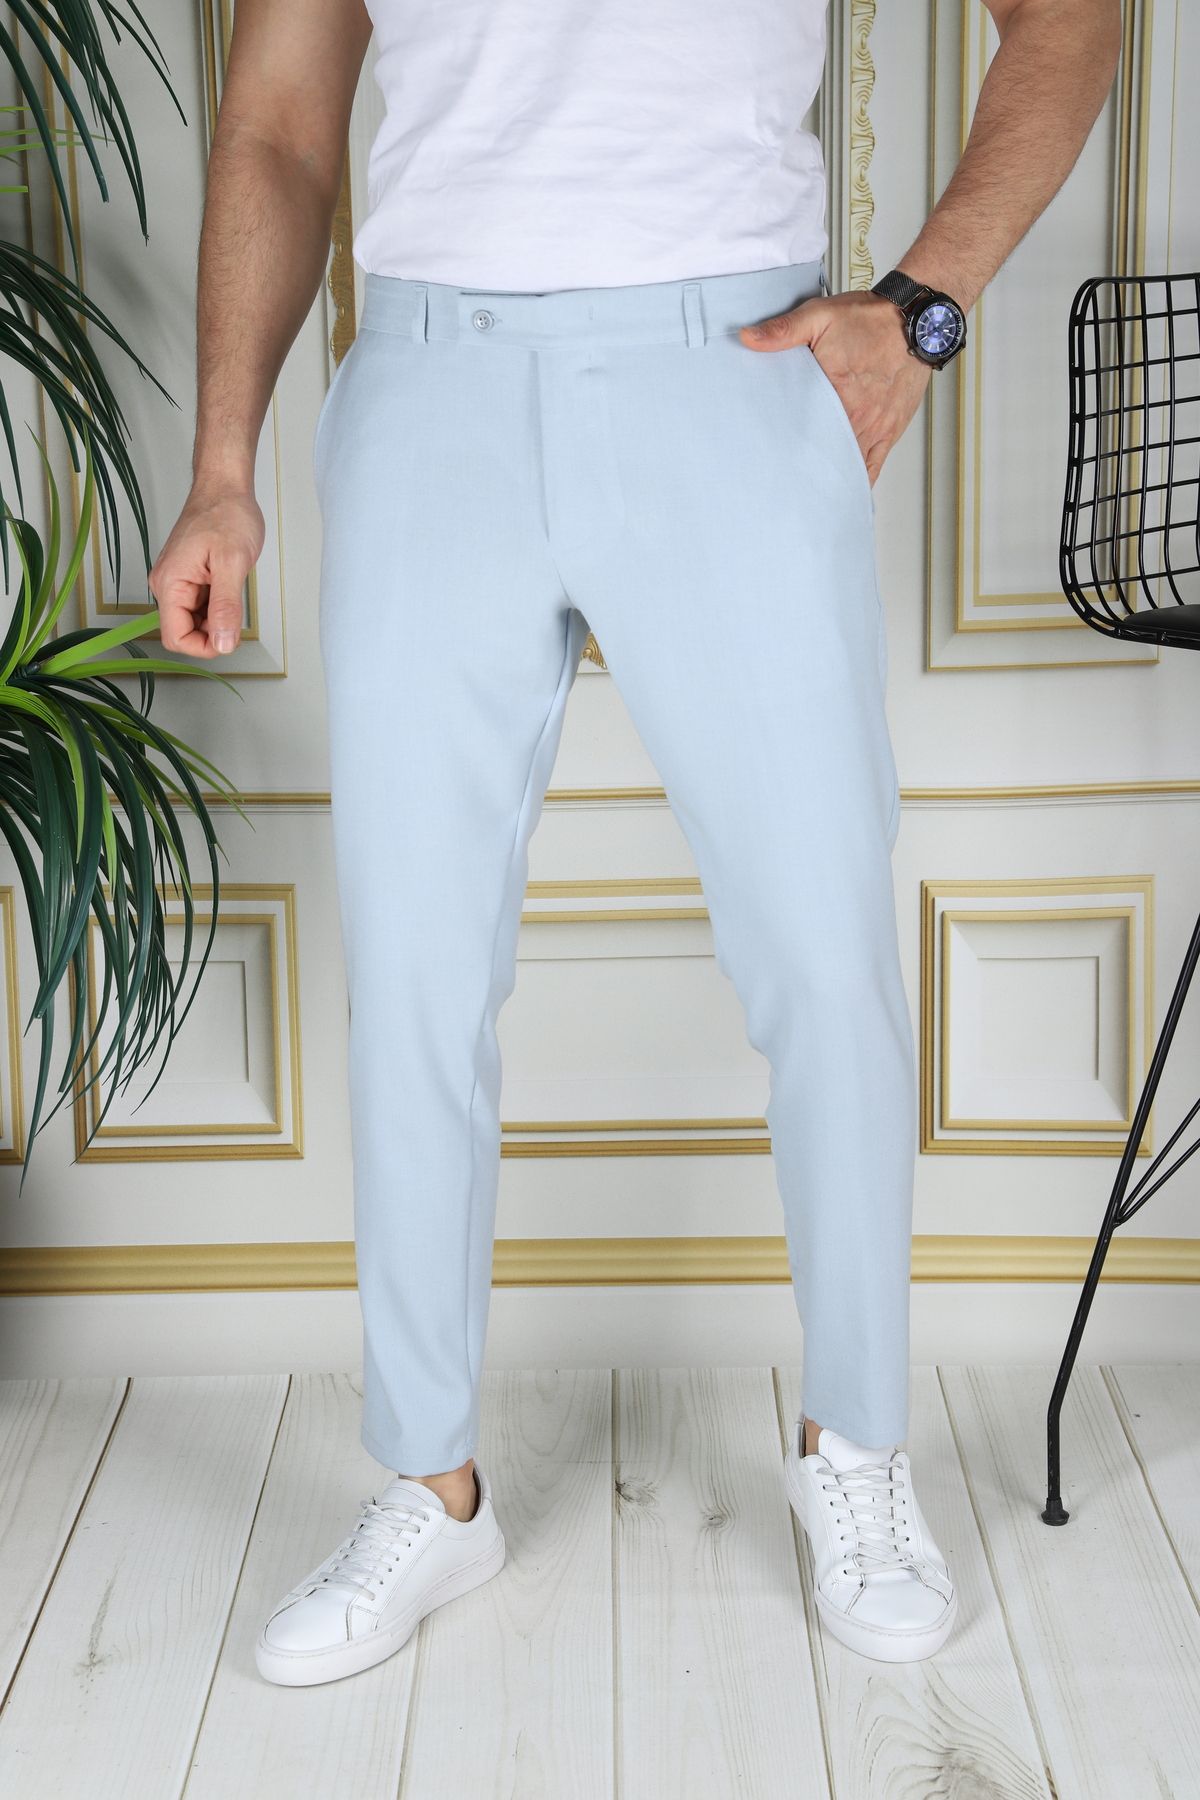 Bürke Erkek Buz Mavisi Renk Italyan Kesim Kaliteli Esnek Likralı Kumaş Bilek Boy Pantolon